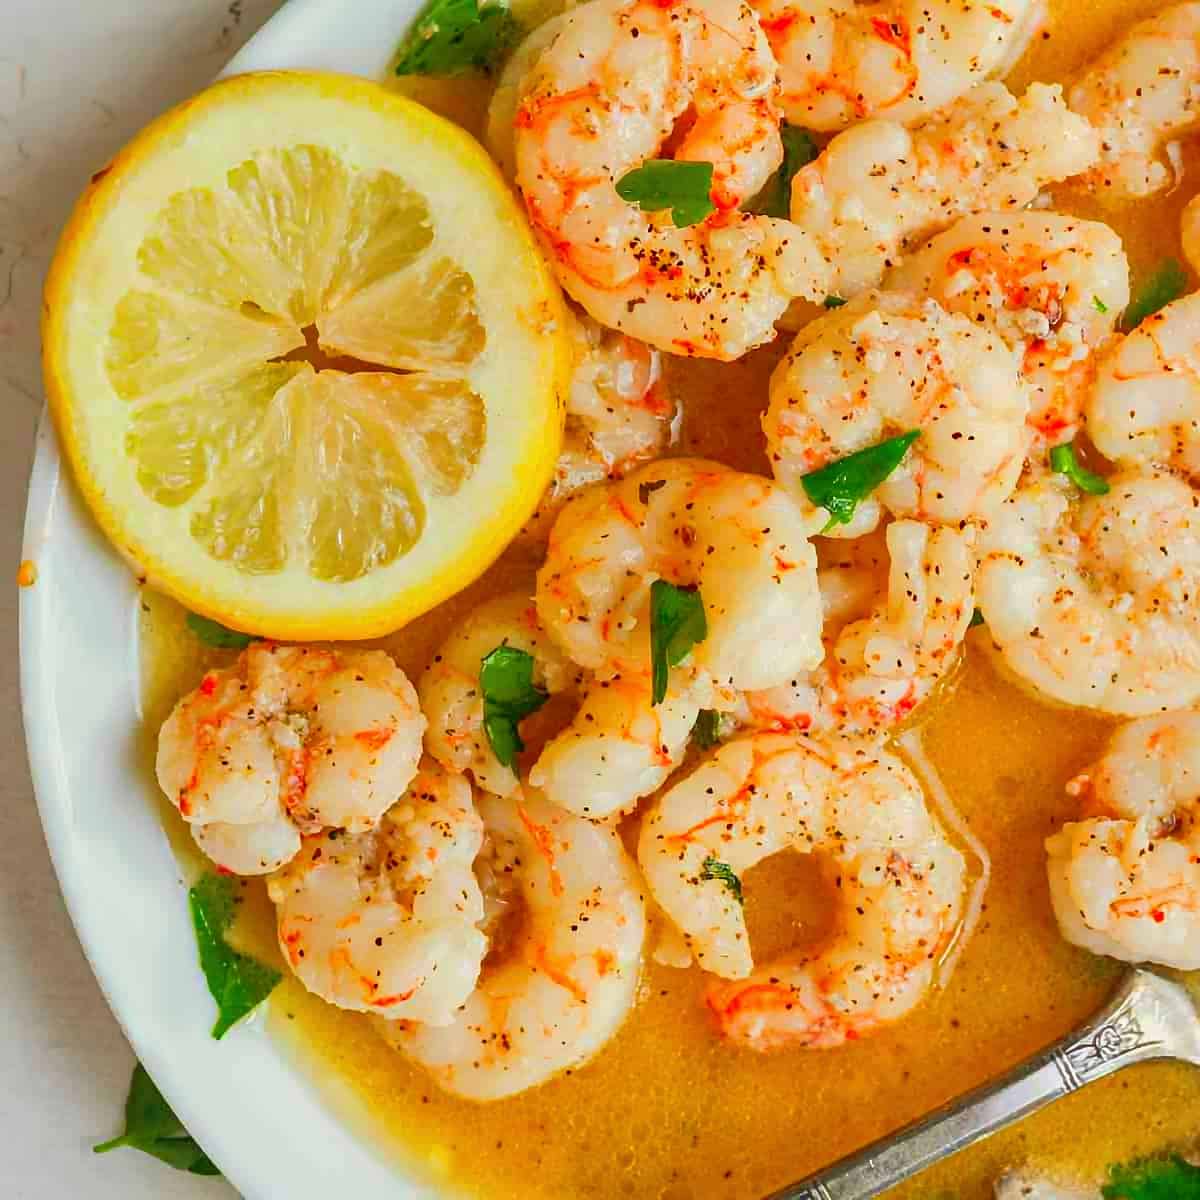 8. Argentine Red Shrimp Recipe - Argentinian shrimp recipe